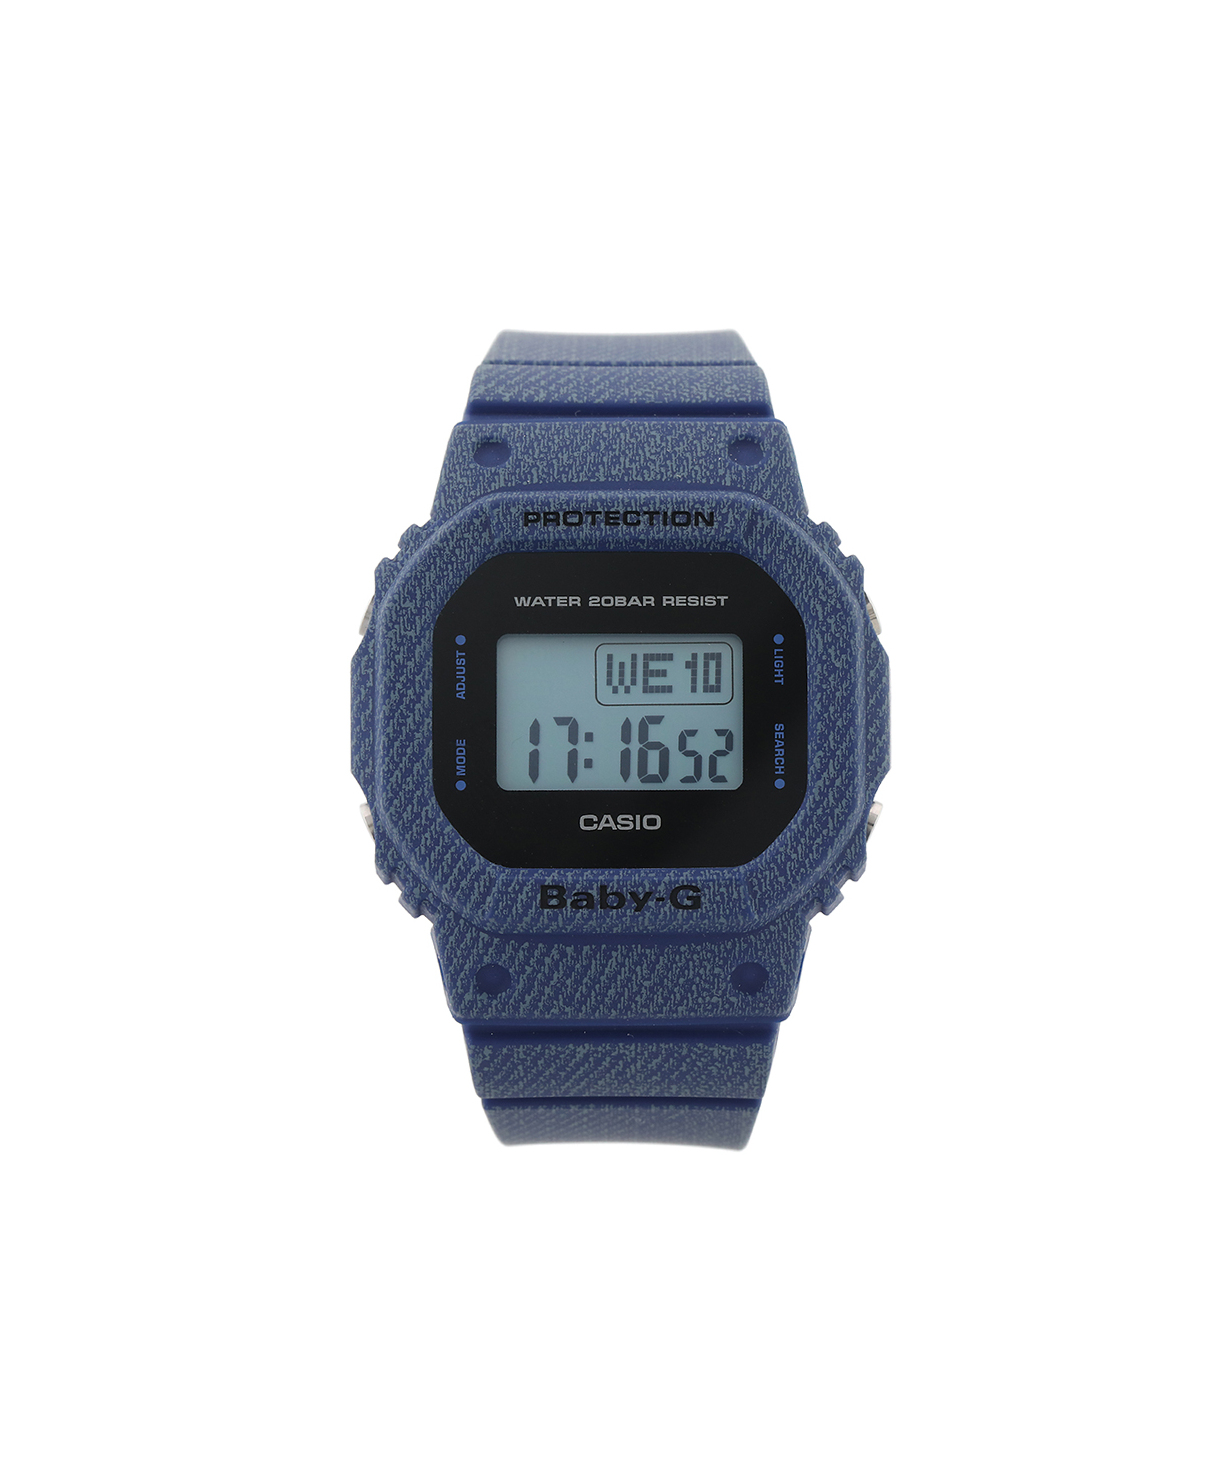 Ժամացույց  «Casio» ձեռքի  BGD-560DE-2DR